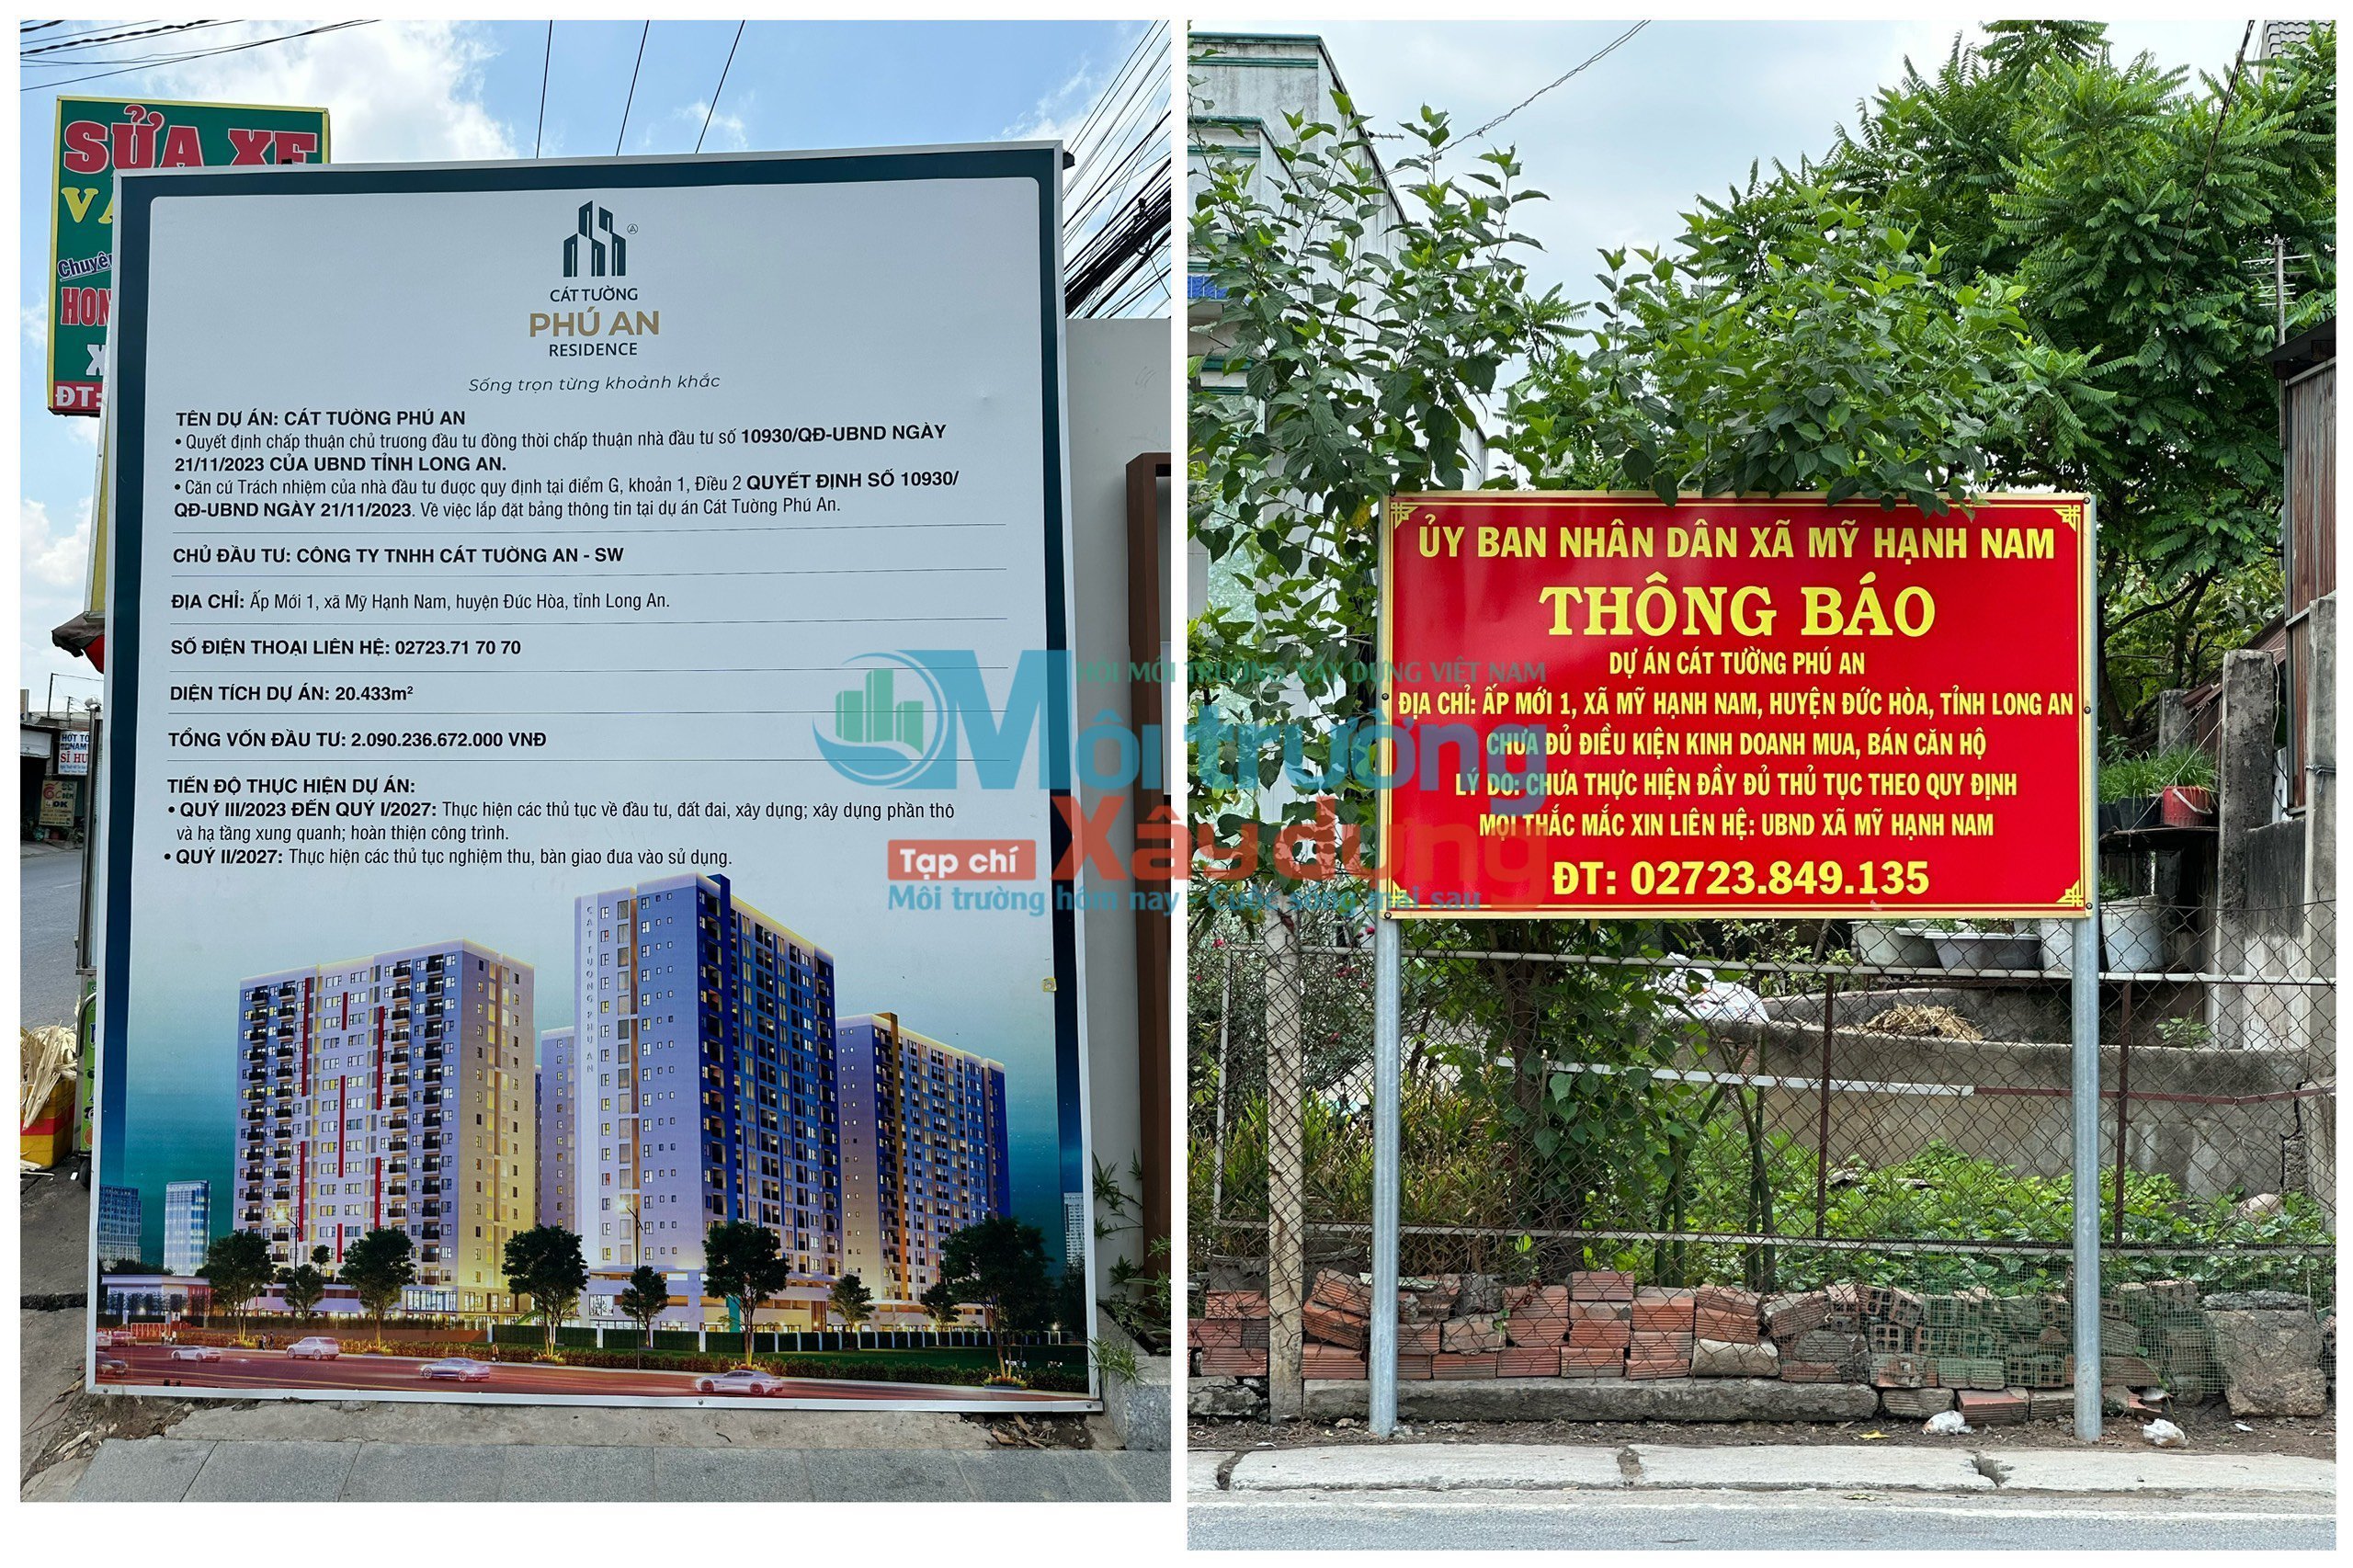 Long An: Dự án Cát Tường Phú An chưa đủ điều kiện pháp lý để kinh doanh bất động sản 